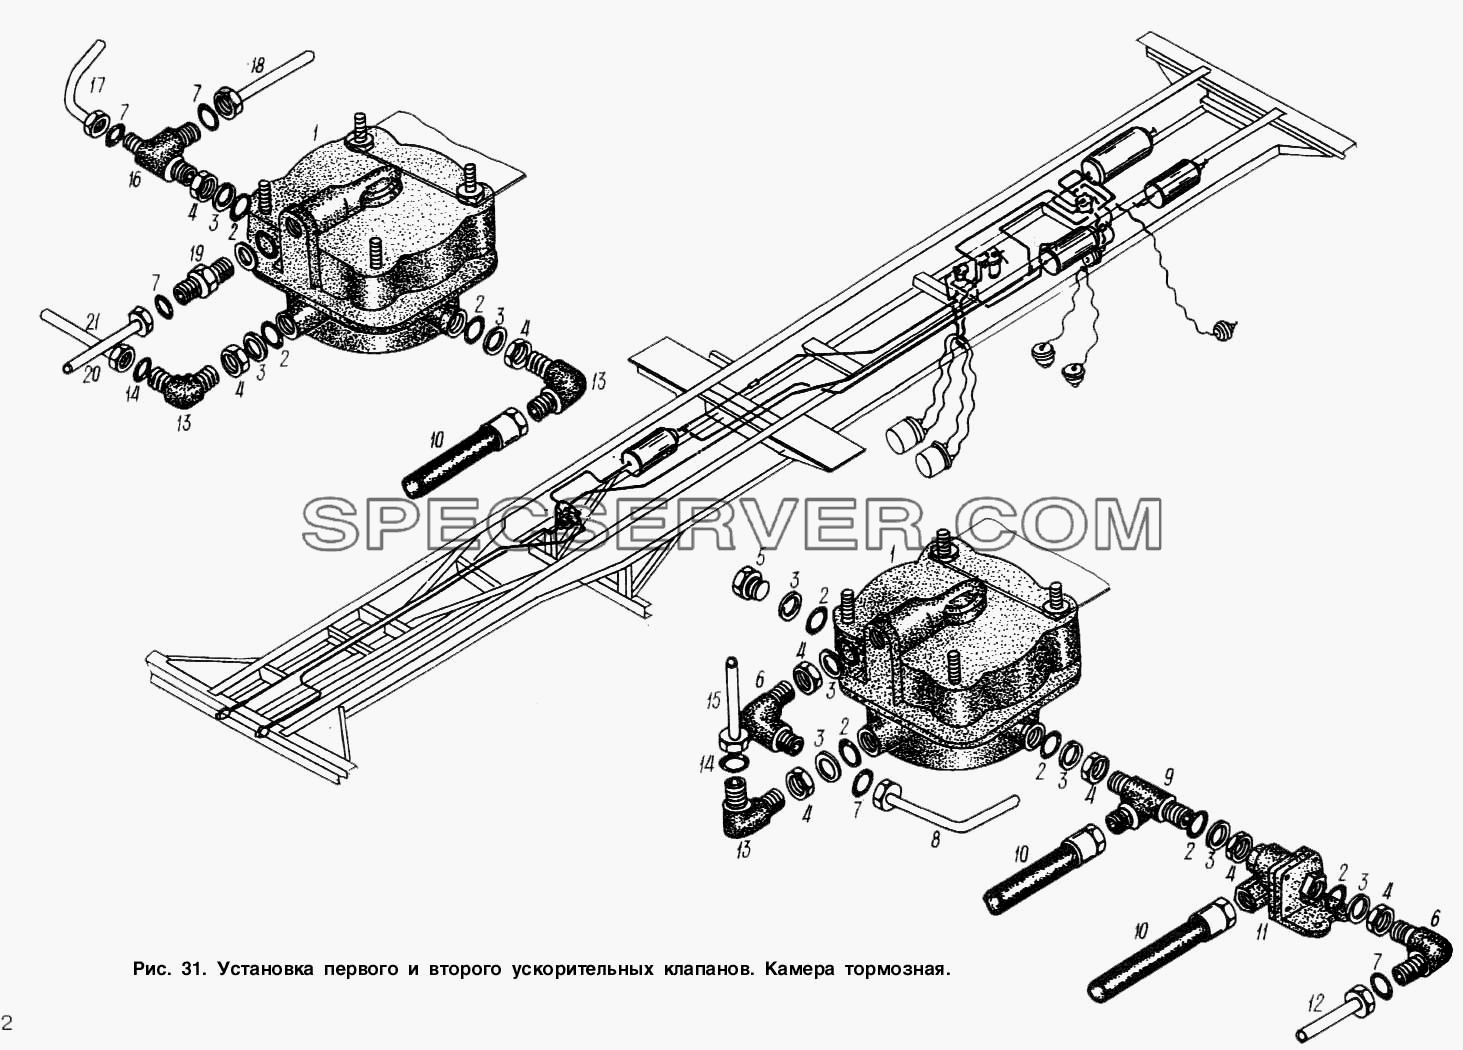 Установка первого и второго ускорительных клапанов для МАЗ-93892 (список запасных частей)